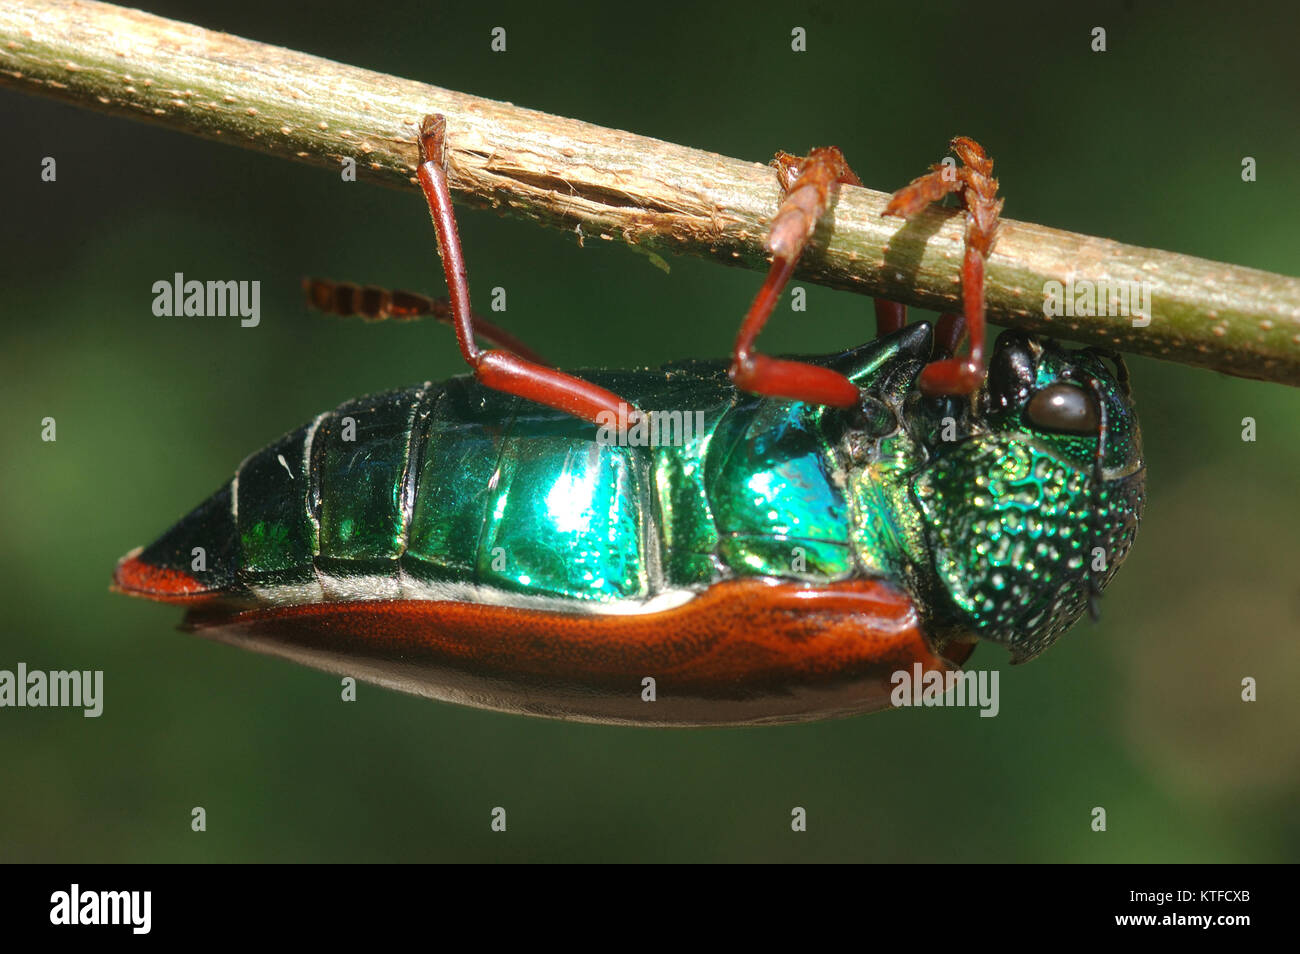 Jewel Beetle von Familie Buprestidae, möglicherweise Sternocera nitens oder S. Brahmina, hängen von einem Zweig. Aus Tamil Nadu, Südindien Stockfoto